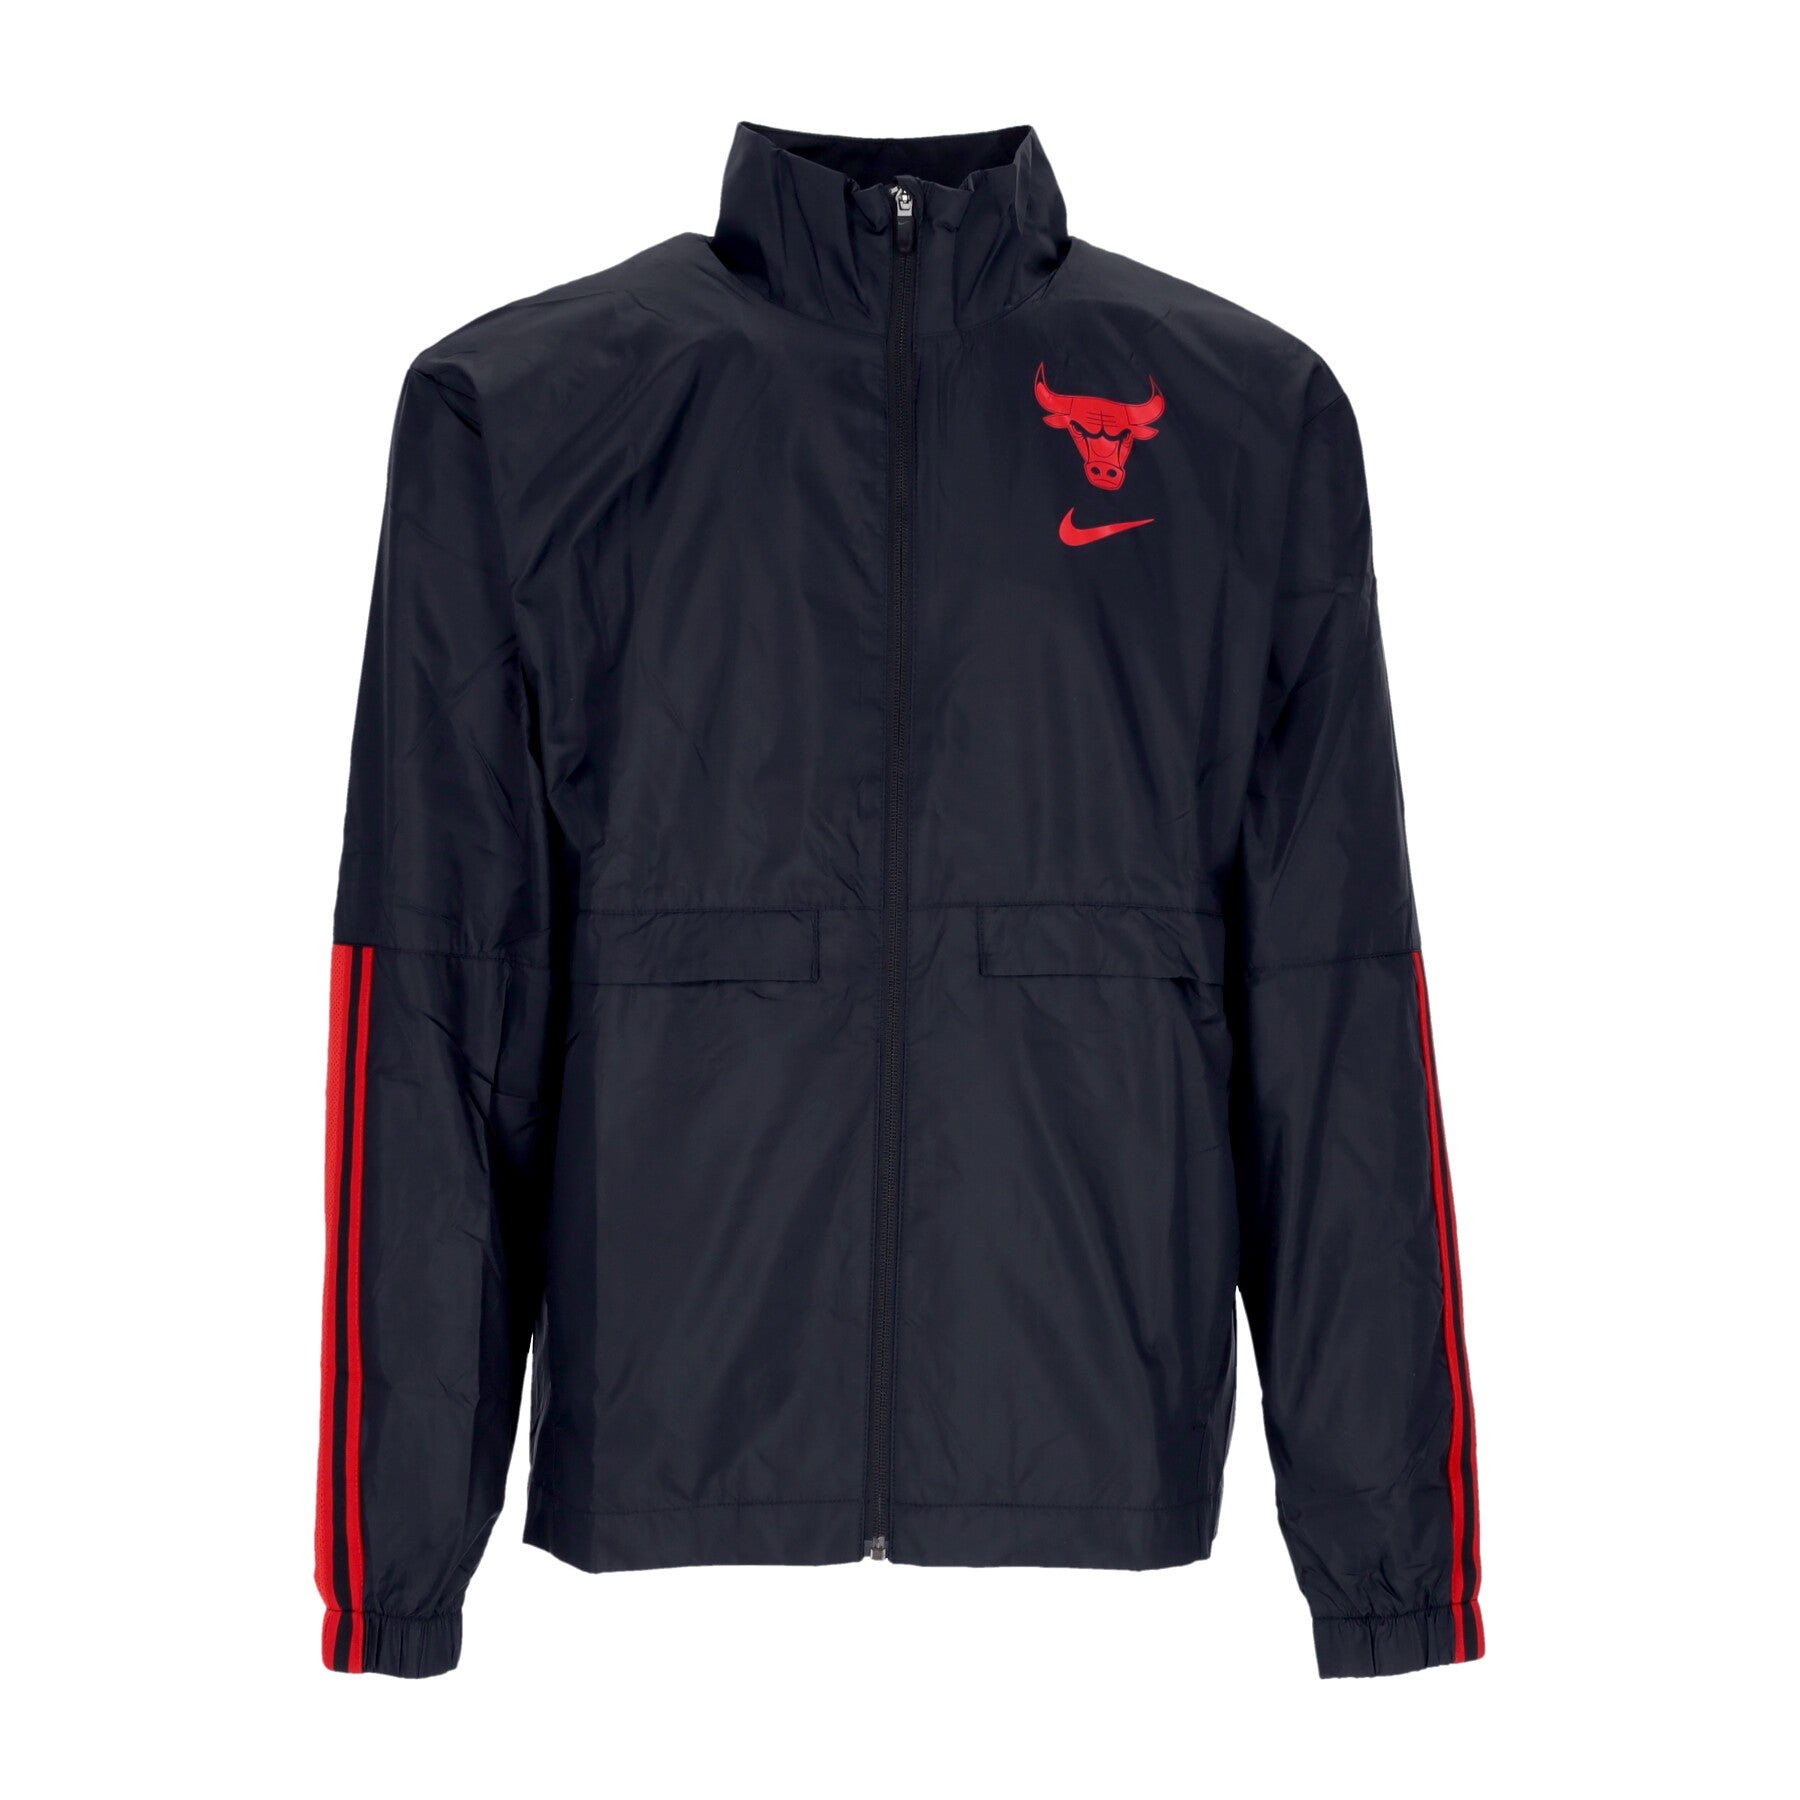 Nike Nba, Giacca Tuta Uomo Nba Tracksuit Jacket Courtside Chibul, Black/university Red/university Red